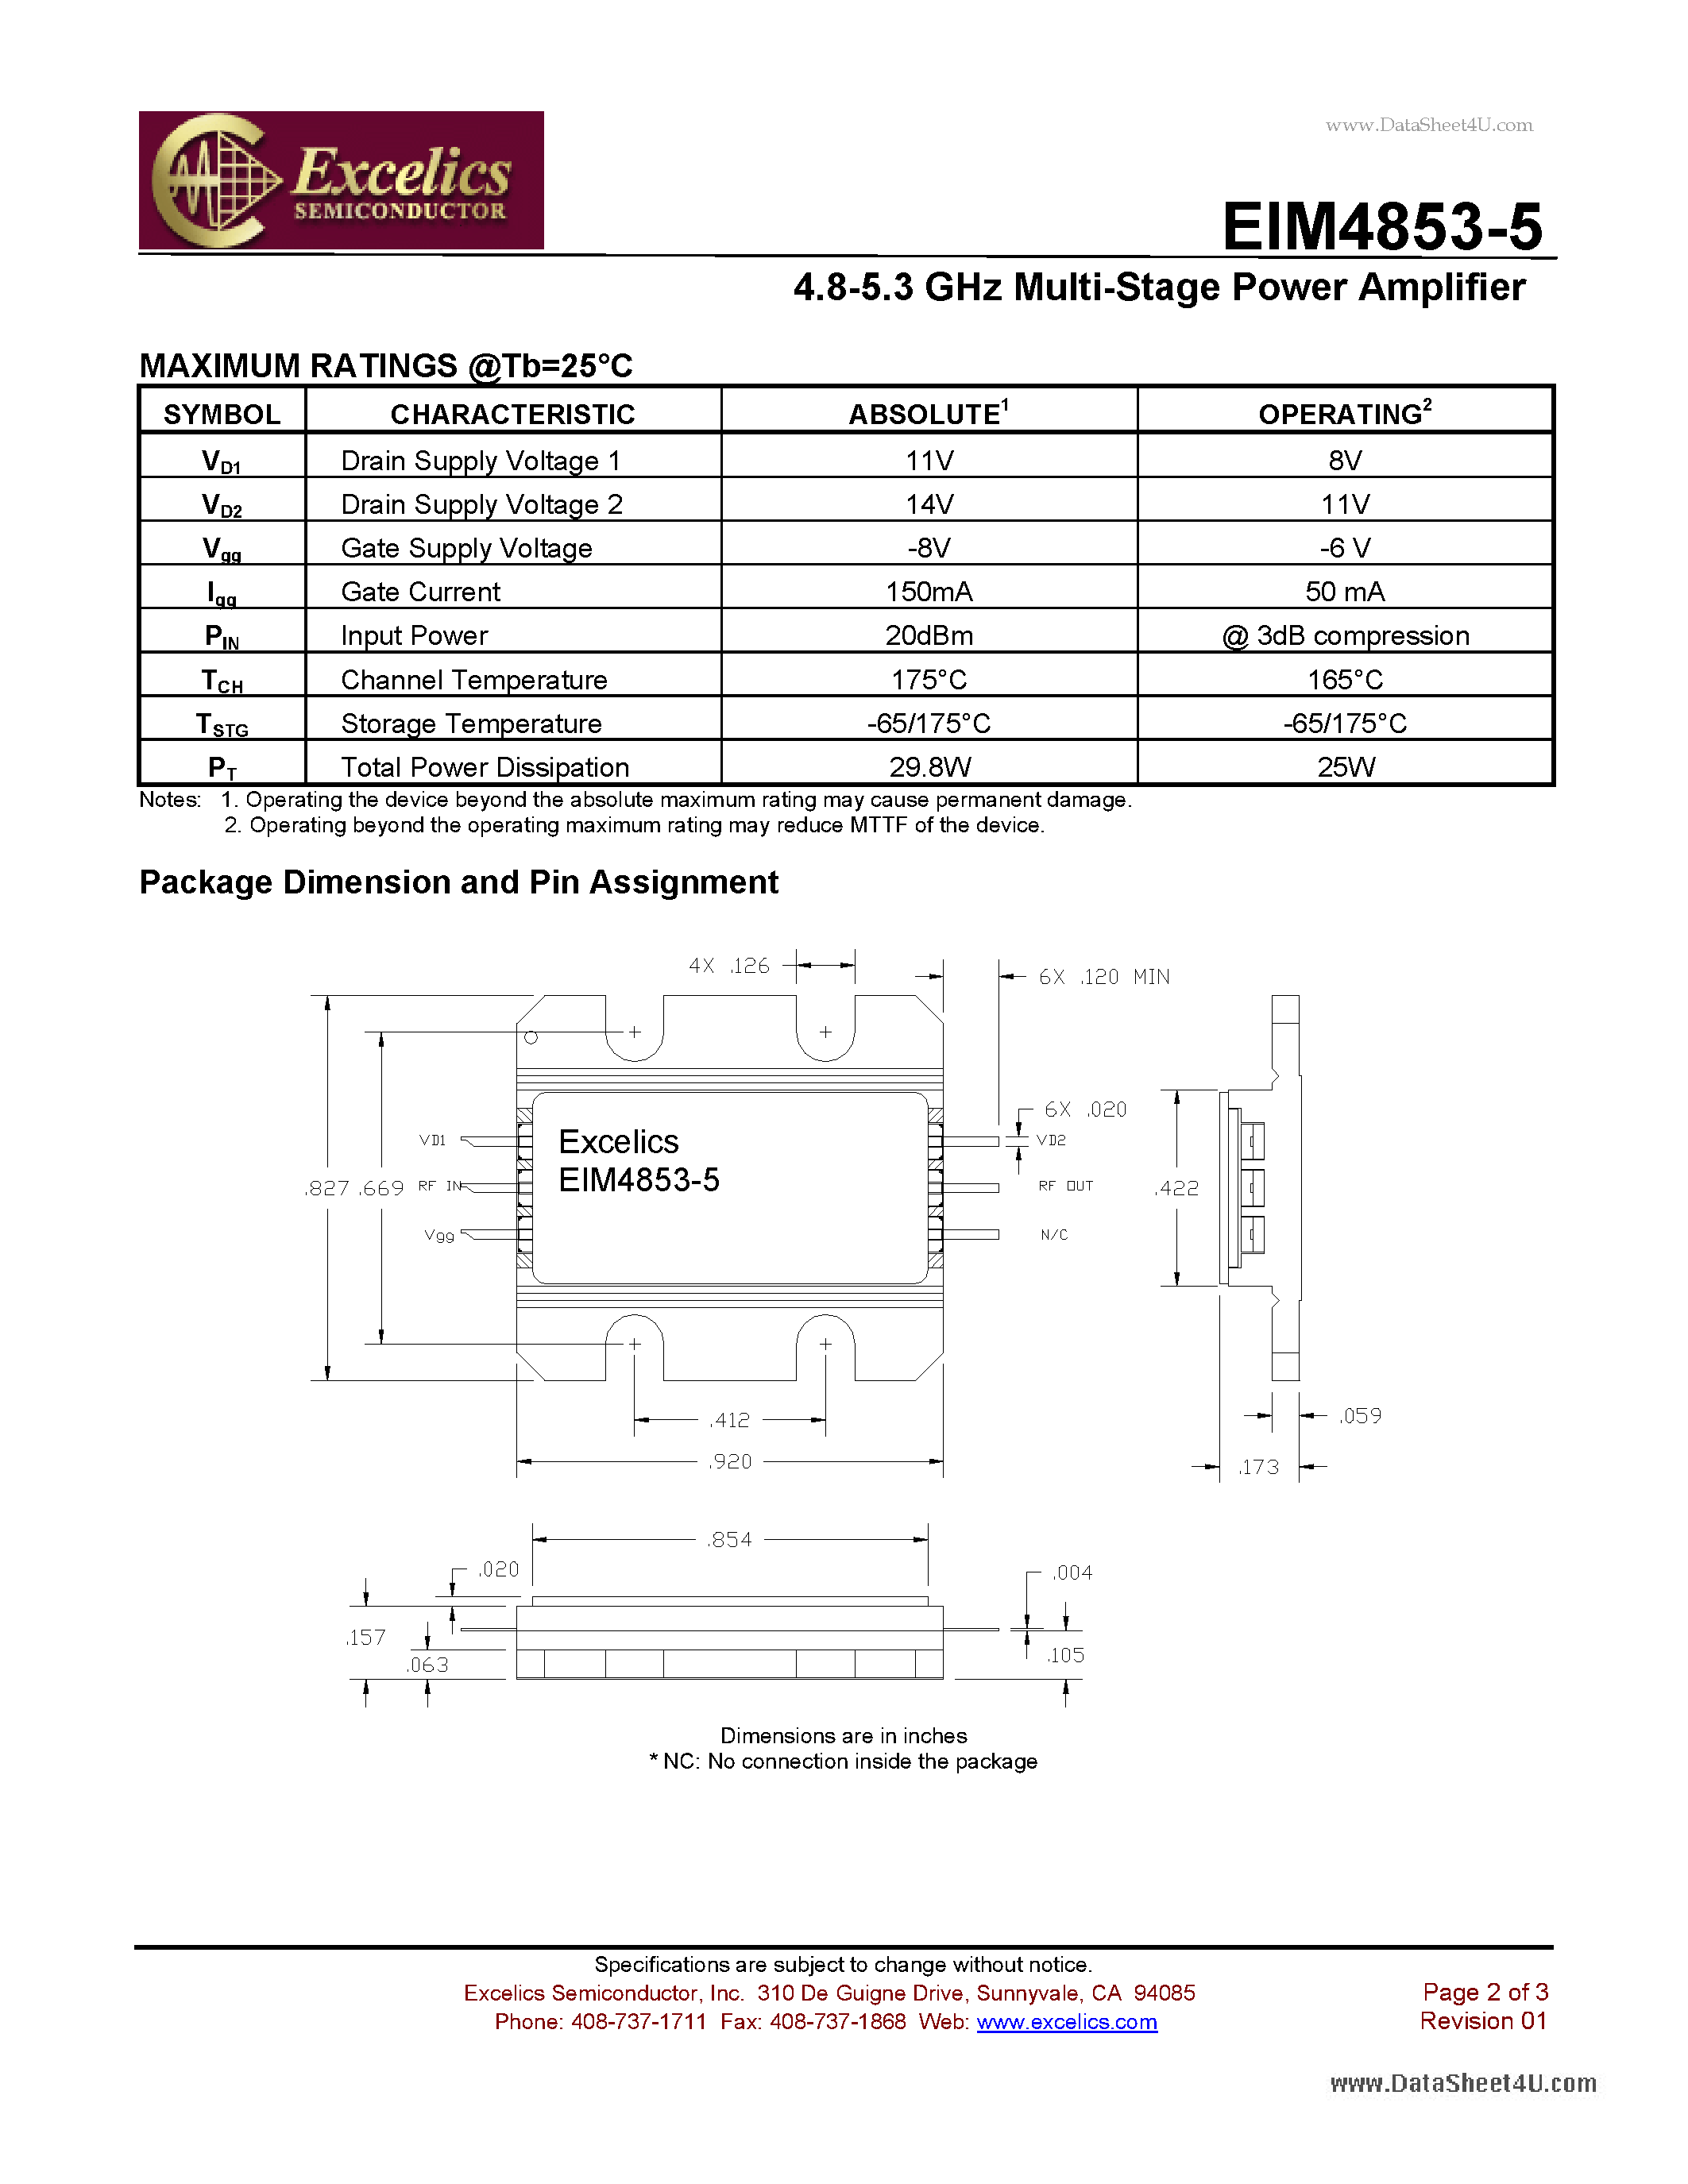 Datasheet EIM4853-5 - 4.8-5.3 GHz Multi-Stage Power Amplifier page 2